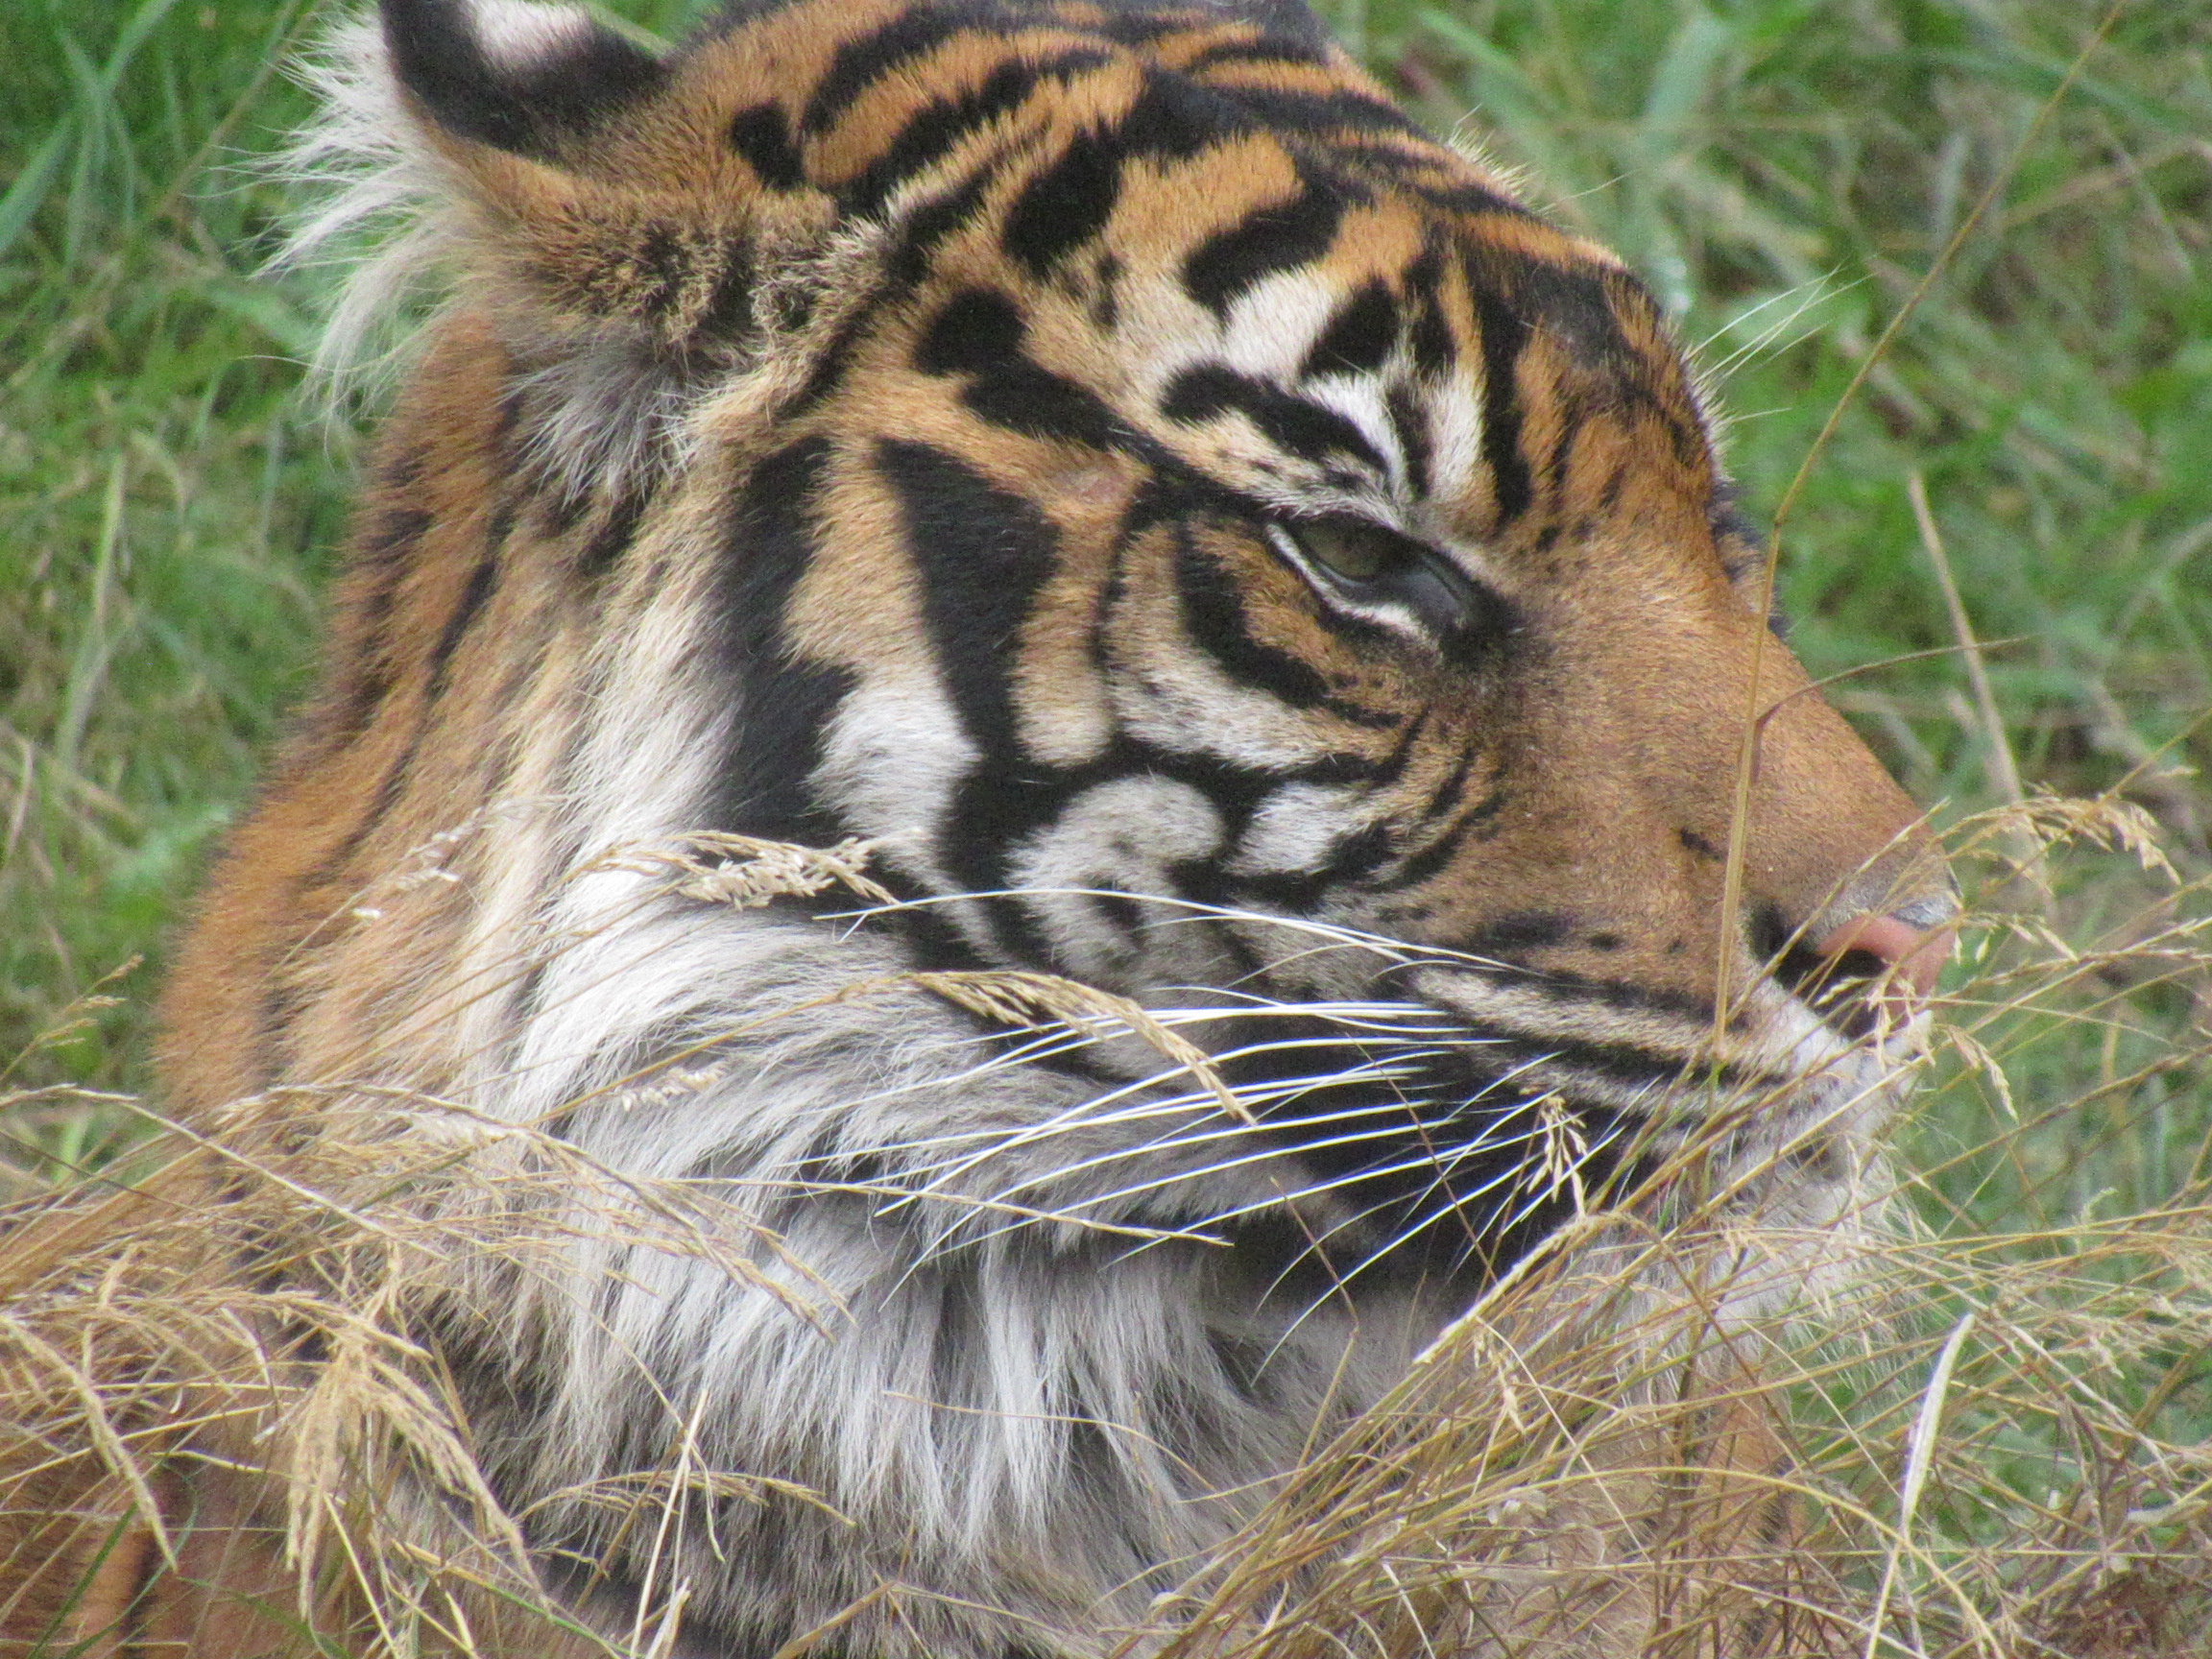 A sumatran tiger snoozing in the grass